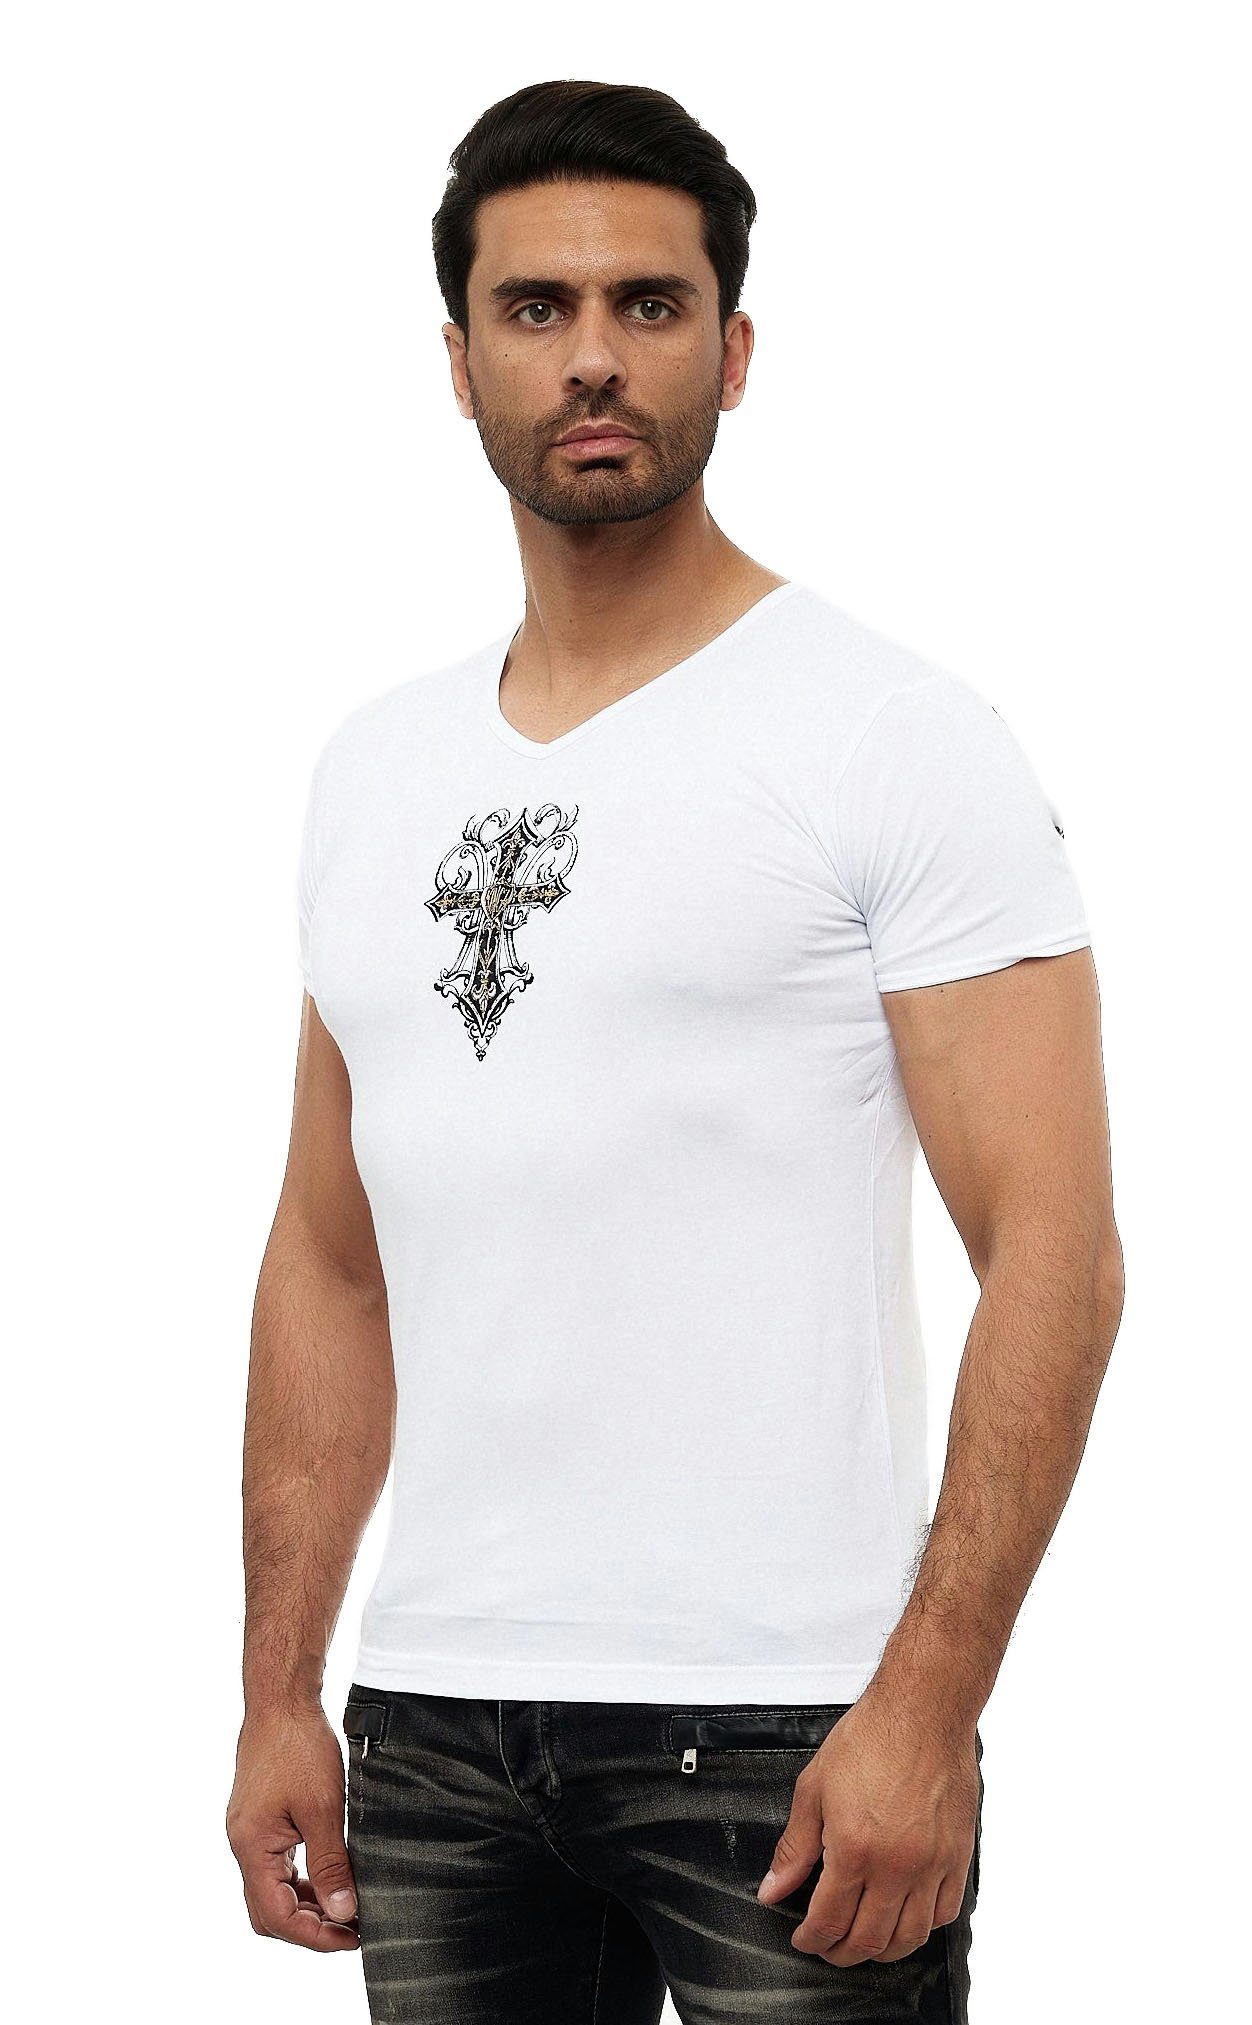 KINGZ T-Shirt in weiß-goldfarben ausgefallenem Design